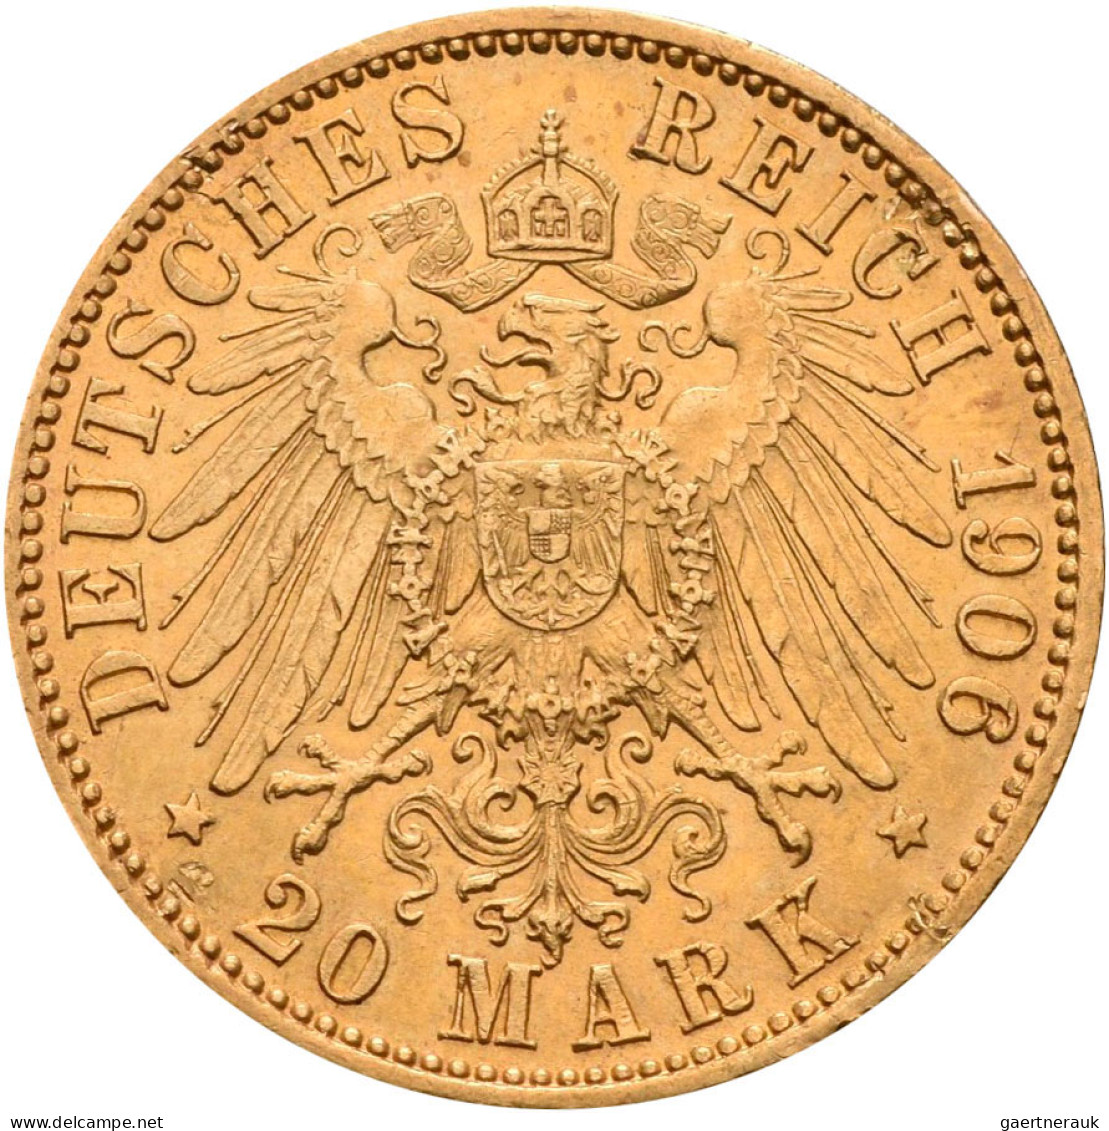 Preußen - Anlagegold: Sammlung mit 6 x 10 Mark sowie 7 x 20 Mark von Wilhelm I.